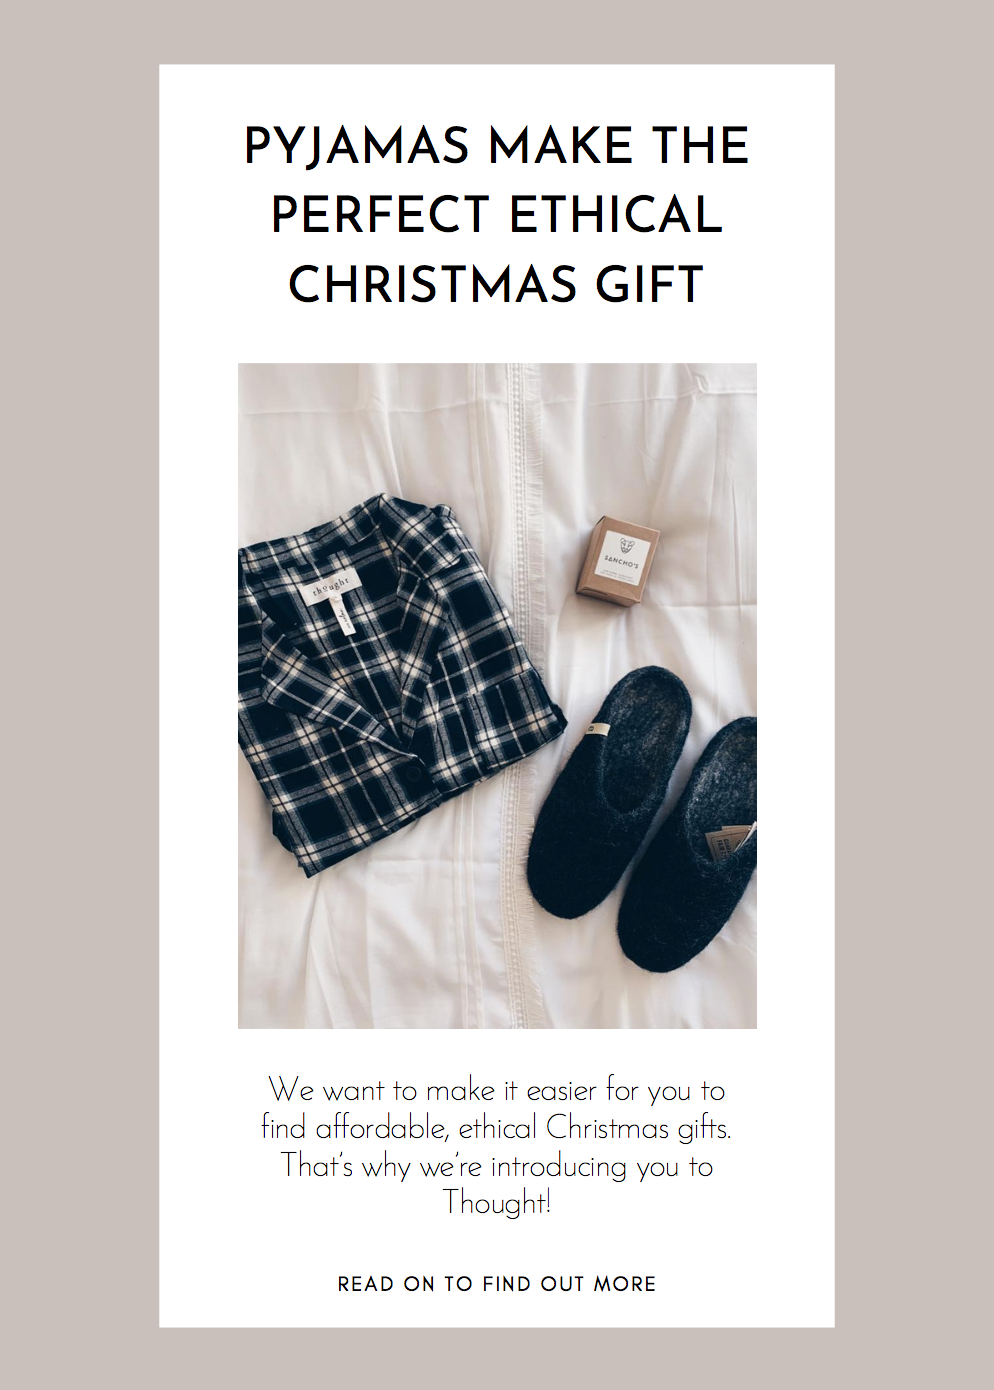 Pyjamas make the perfect ethical Christmas gift